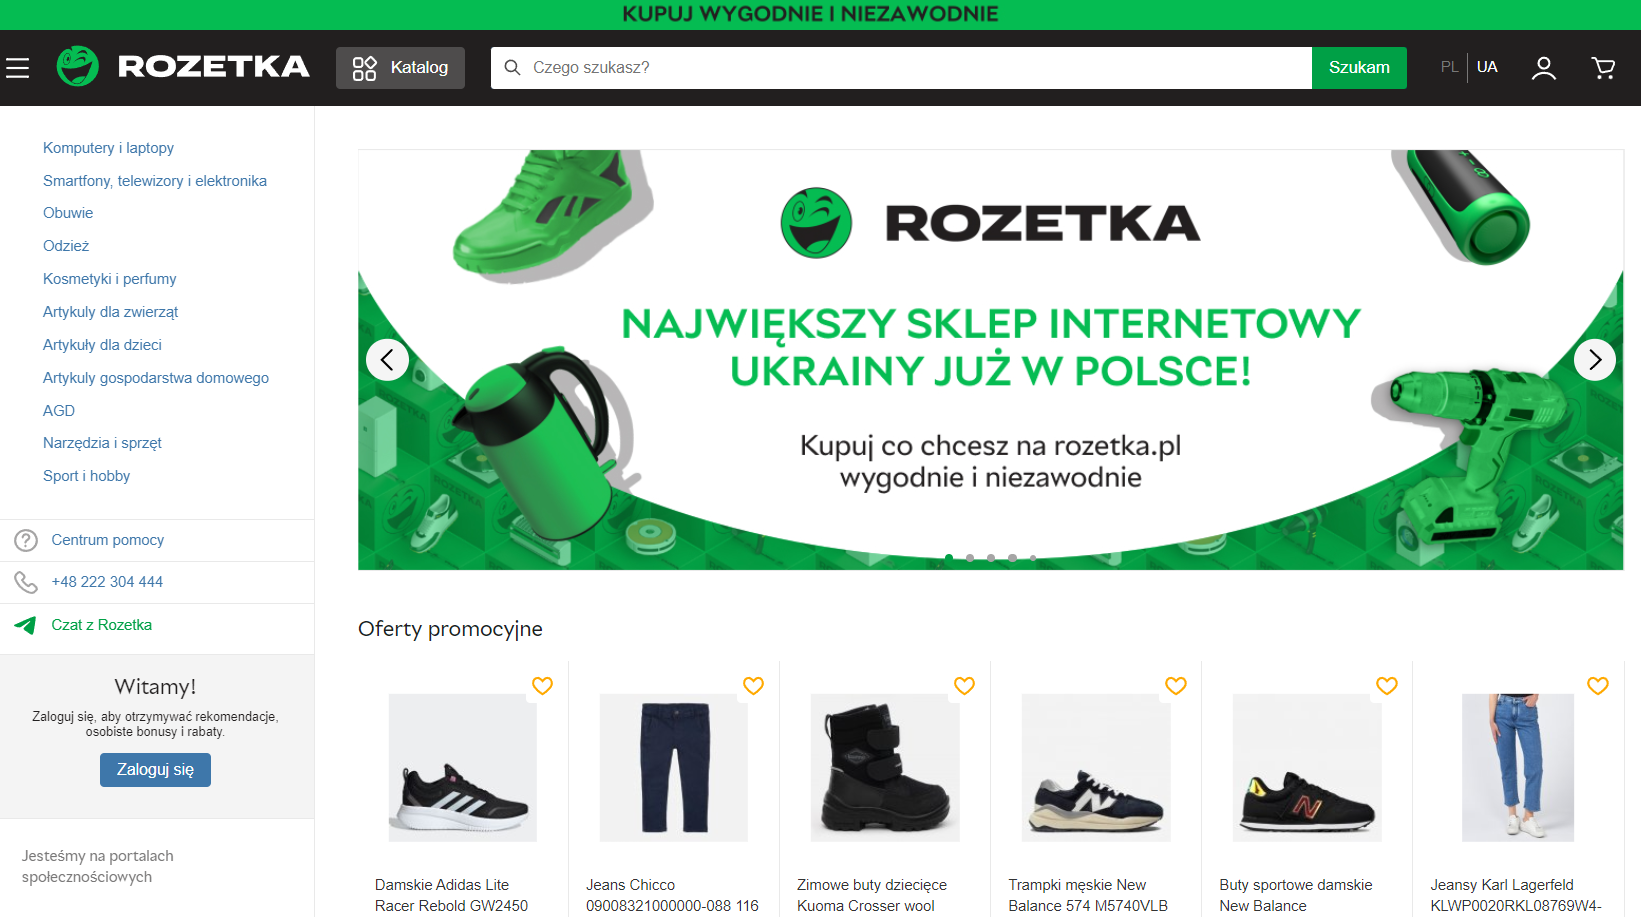 Rozetka ha abierto una tienda en línea en Polonia y busca nuevos empleados